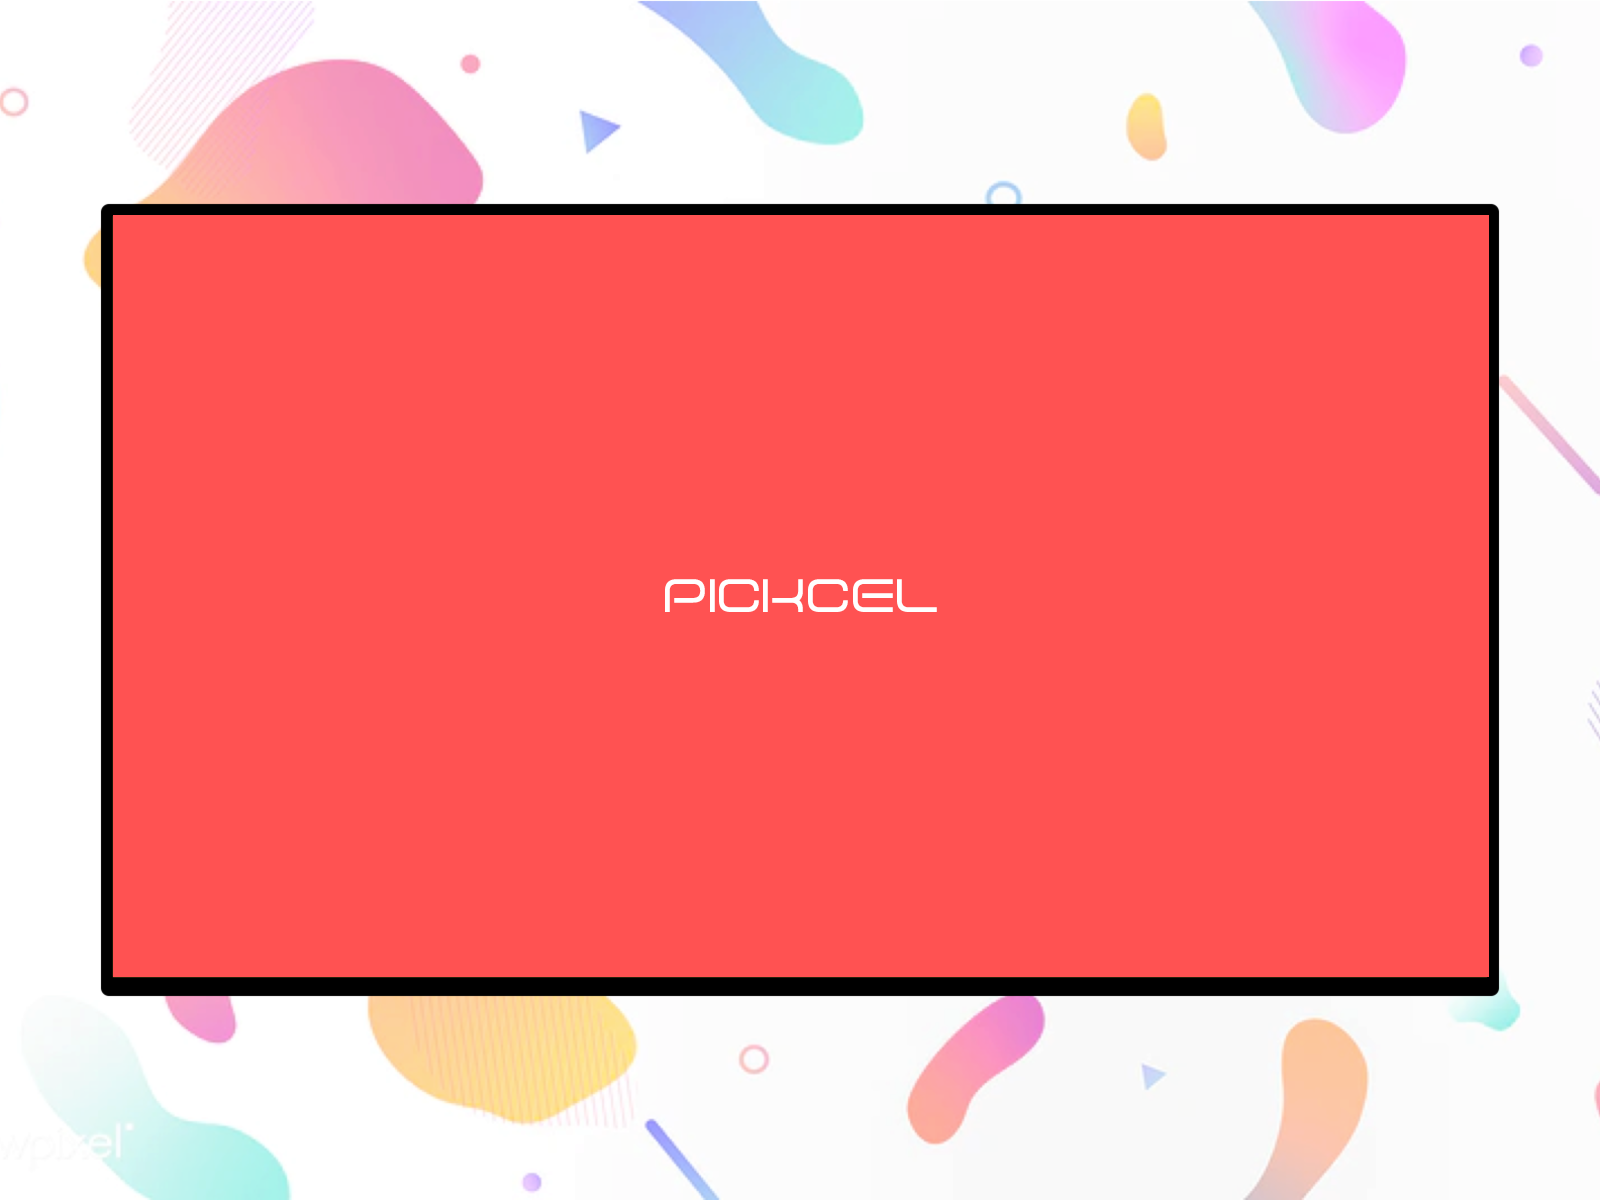 pickcel digital signage